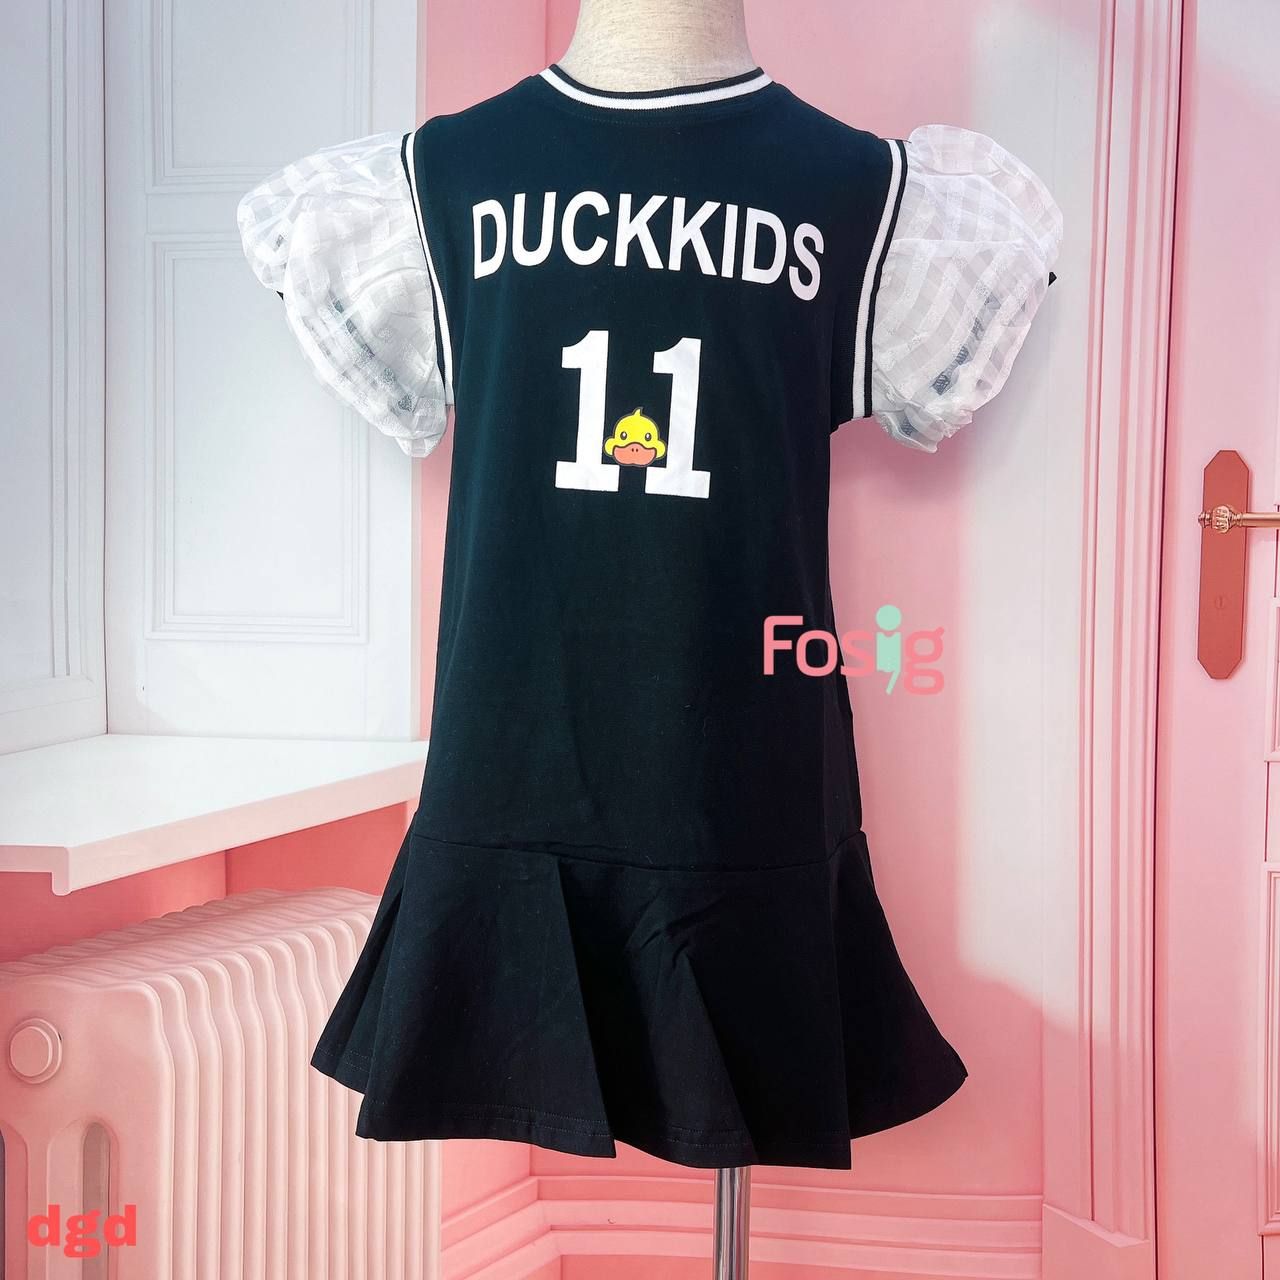  [16-20kg] Đầm Tay Ngắn Bé Gái - Đen Duckkids V56 